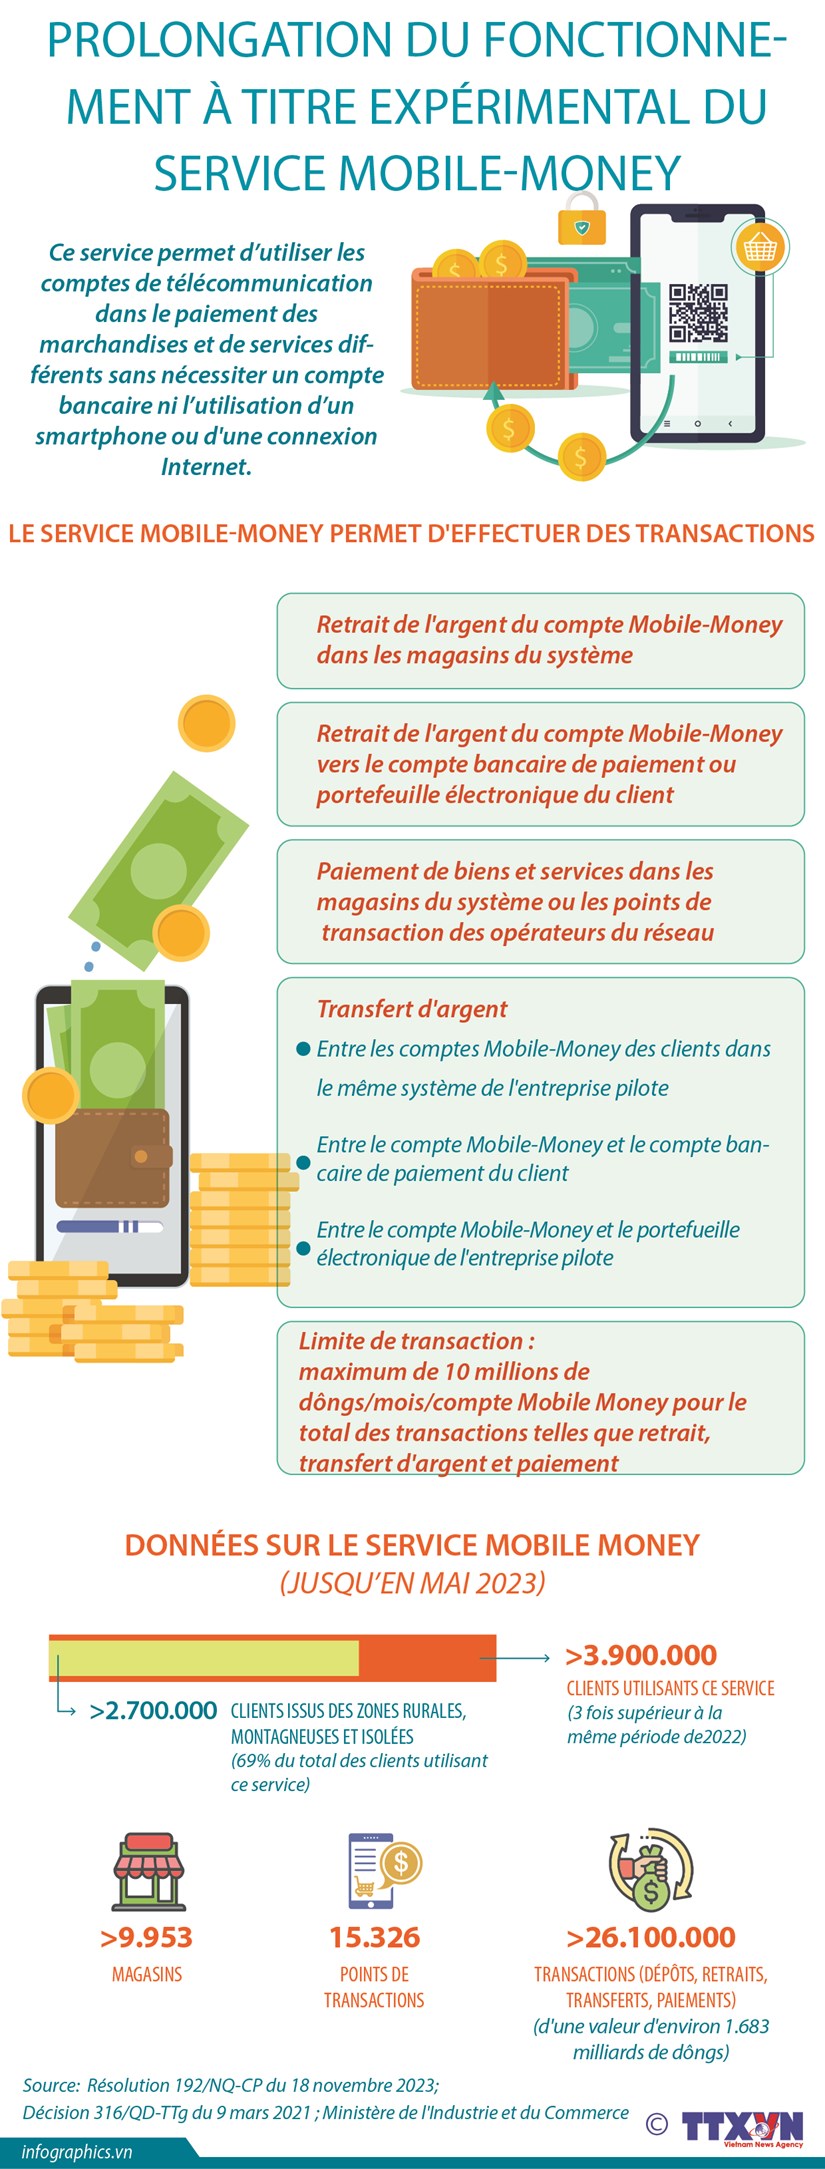 Prolongation du fonctionnement a titre experimental du service Mobile-Money hinh anh 1